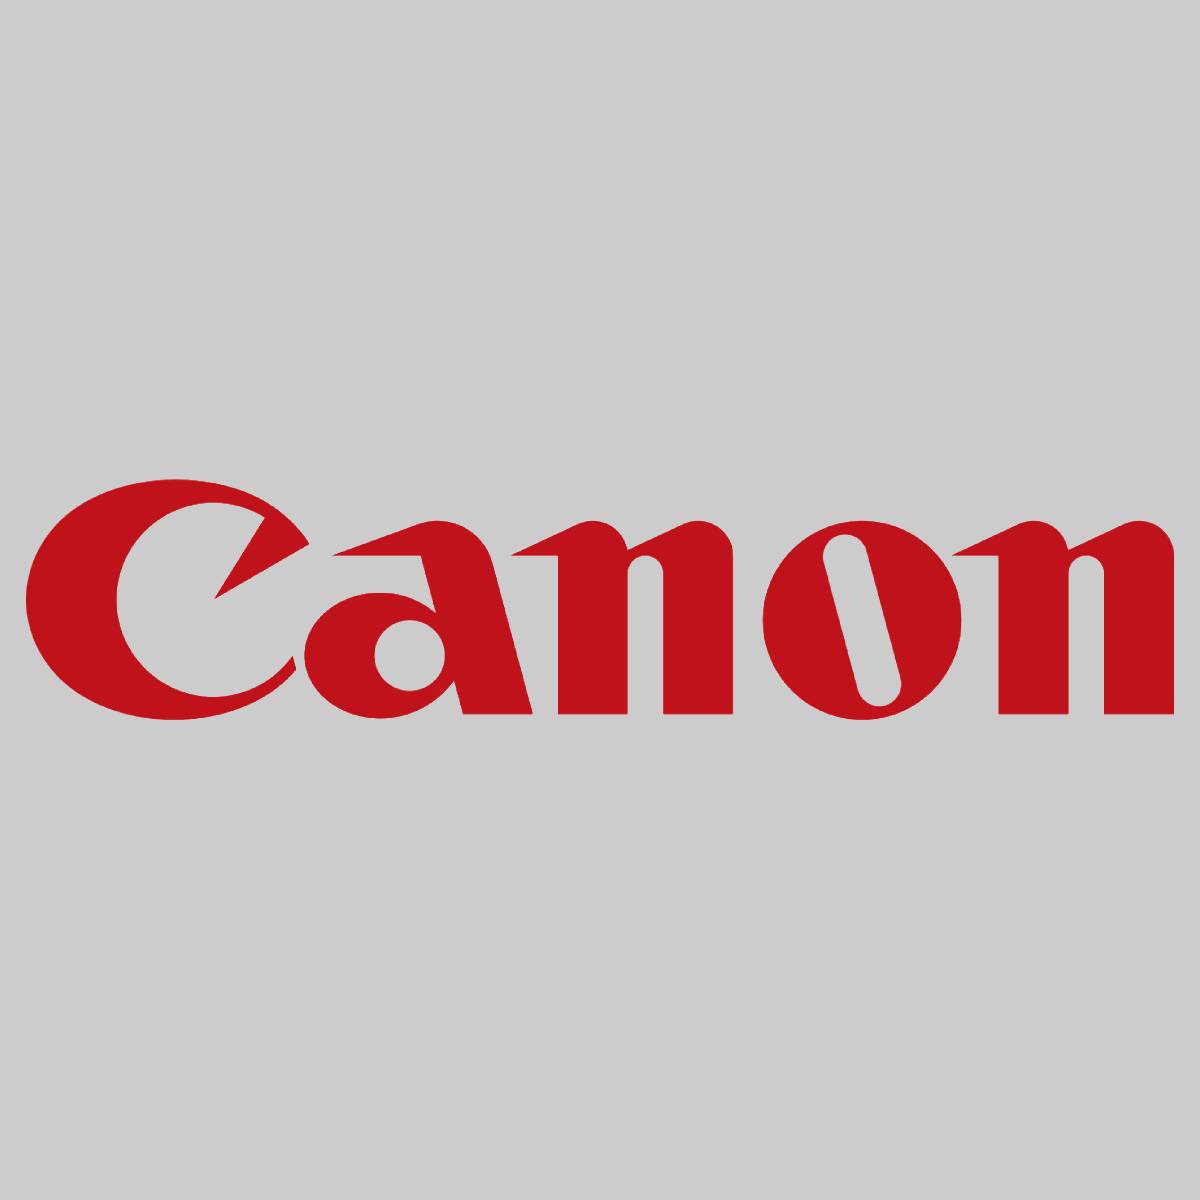 "Original Canon 192T Gear FL3-0561-010 für imagePRESS C6000 C6010 C7000 C7010